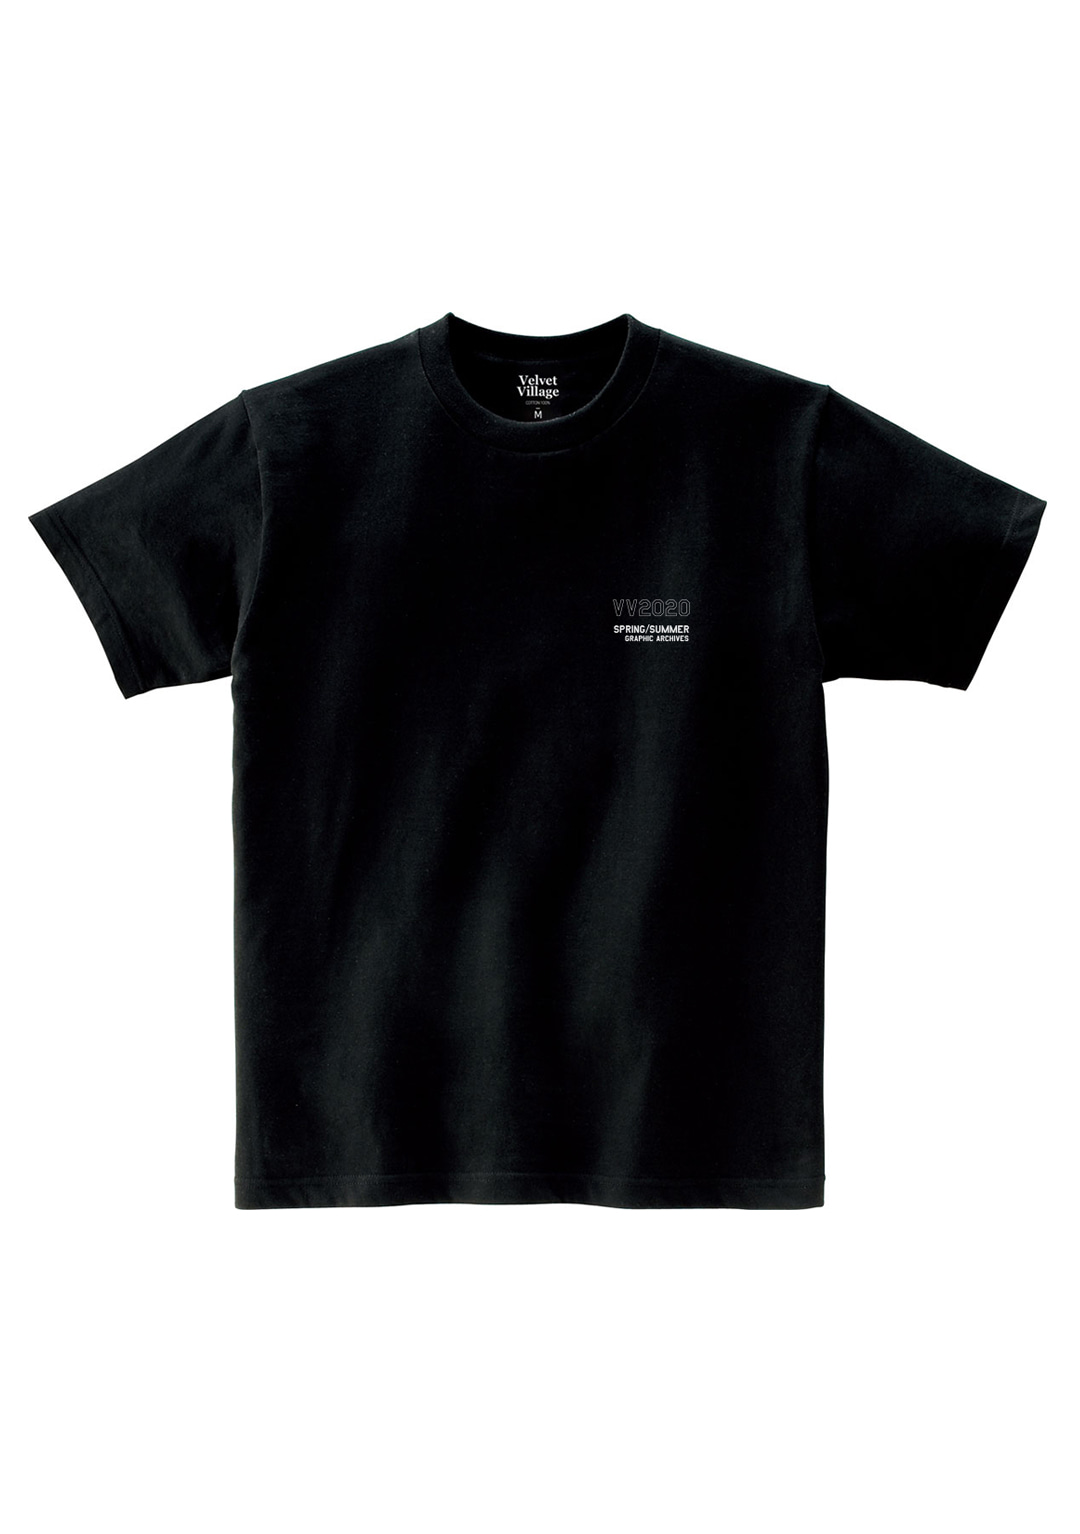 VV2020 T-shirt (Black)